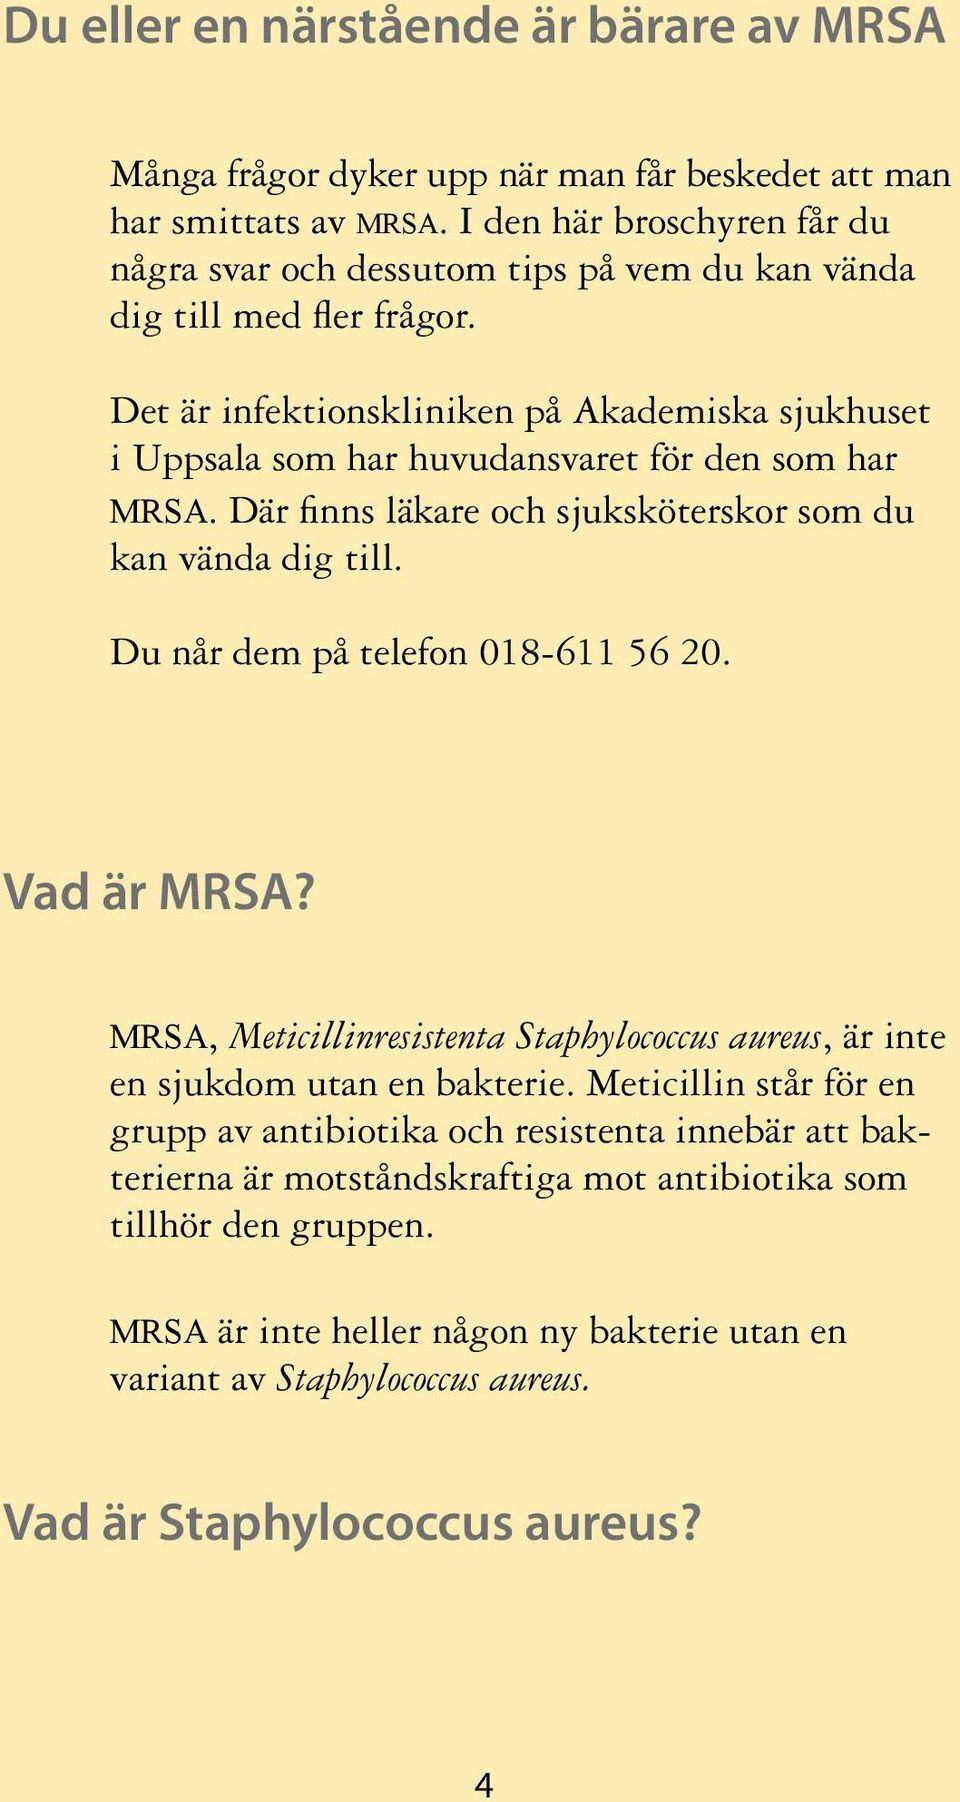 Det är infektionskliniken på Akademiska sjukhuset i Uppsala som har huvudansvaret för den som har mrsa. Där finns läkare och sjuksköterskor som du kan vända dig till.